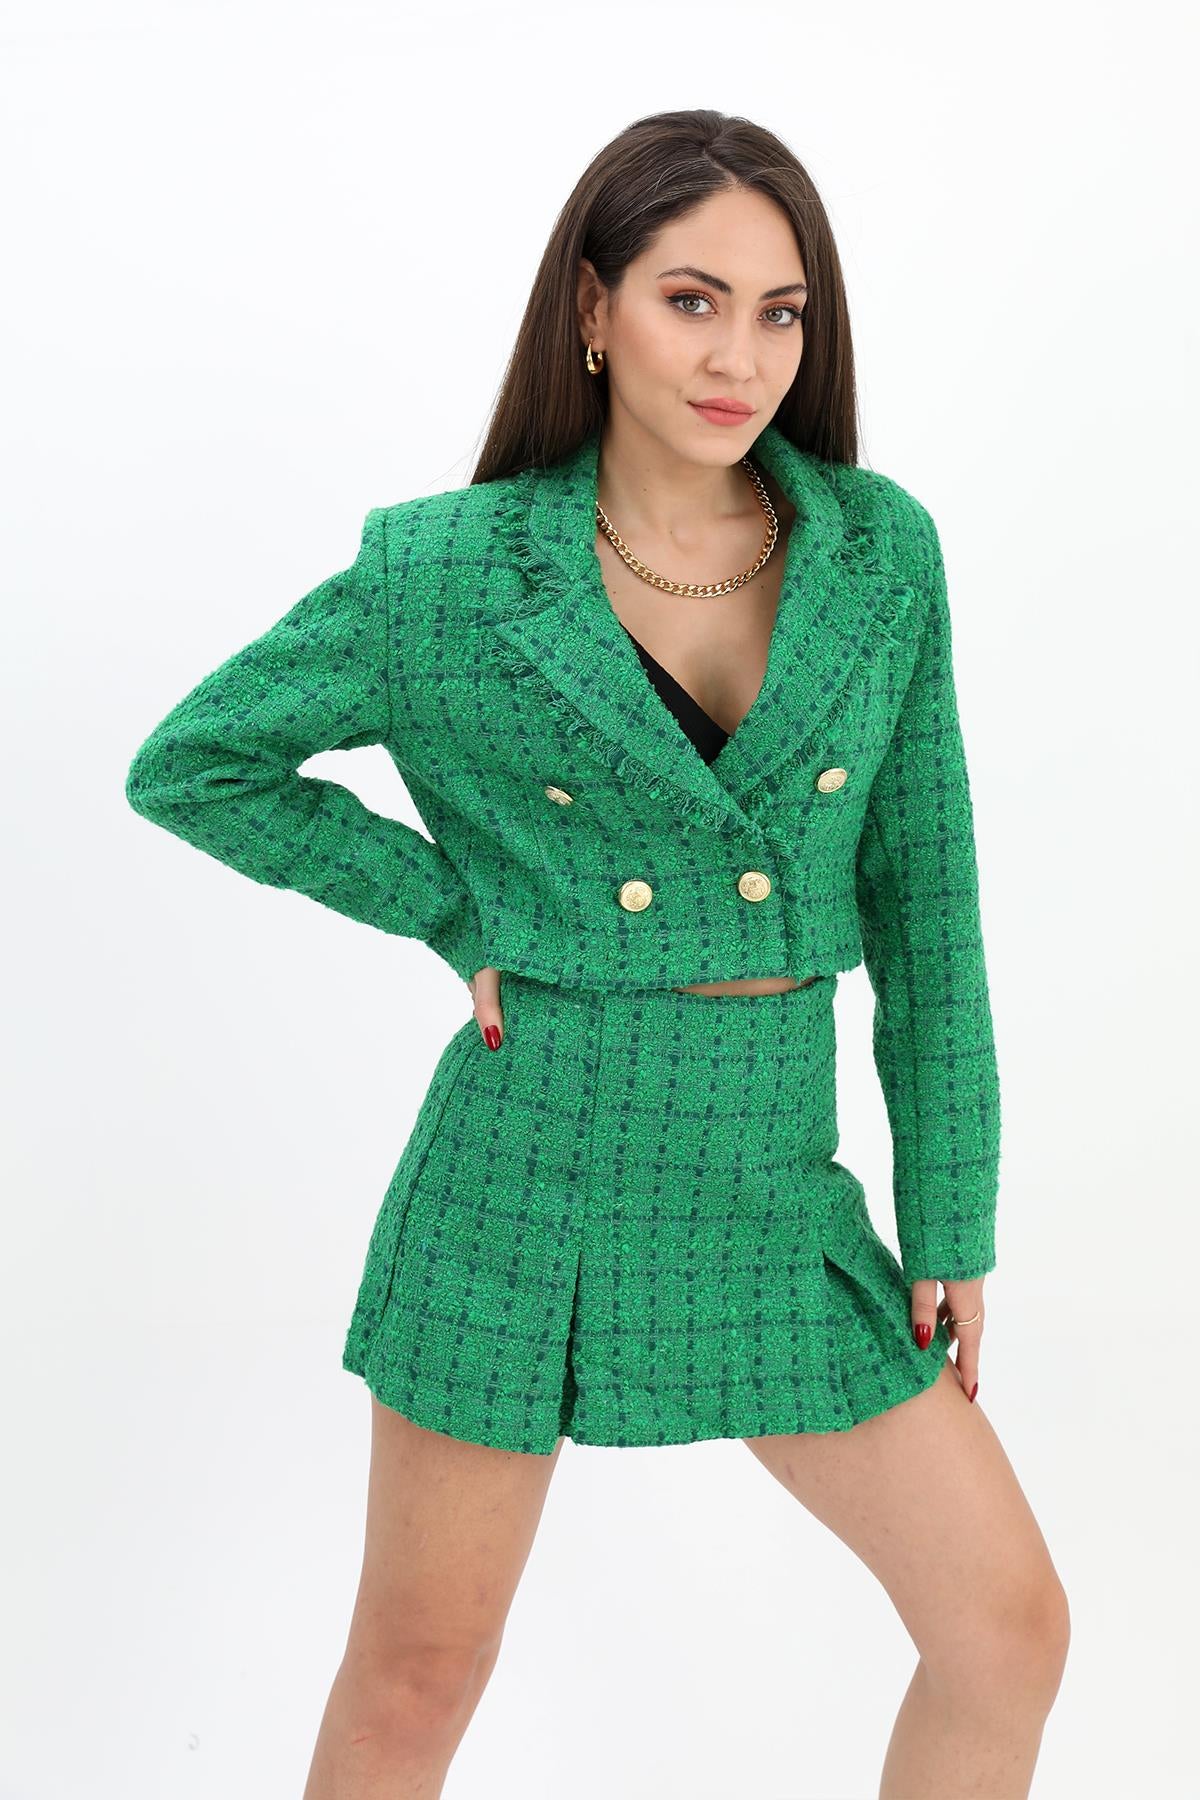 Women's High Waist Side Zipper Chanel Fabric Shorts Skirt - Green - STREETMODE™